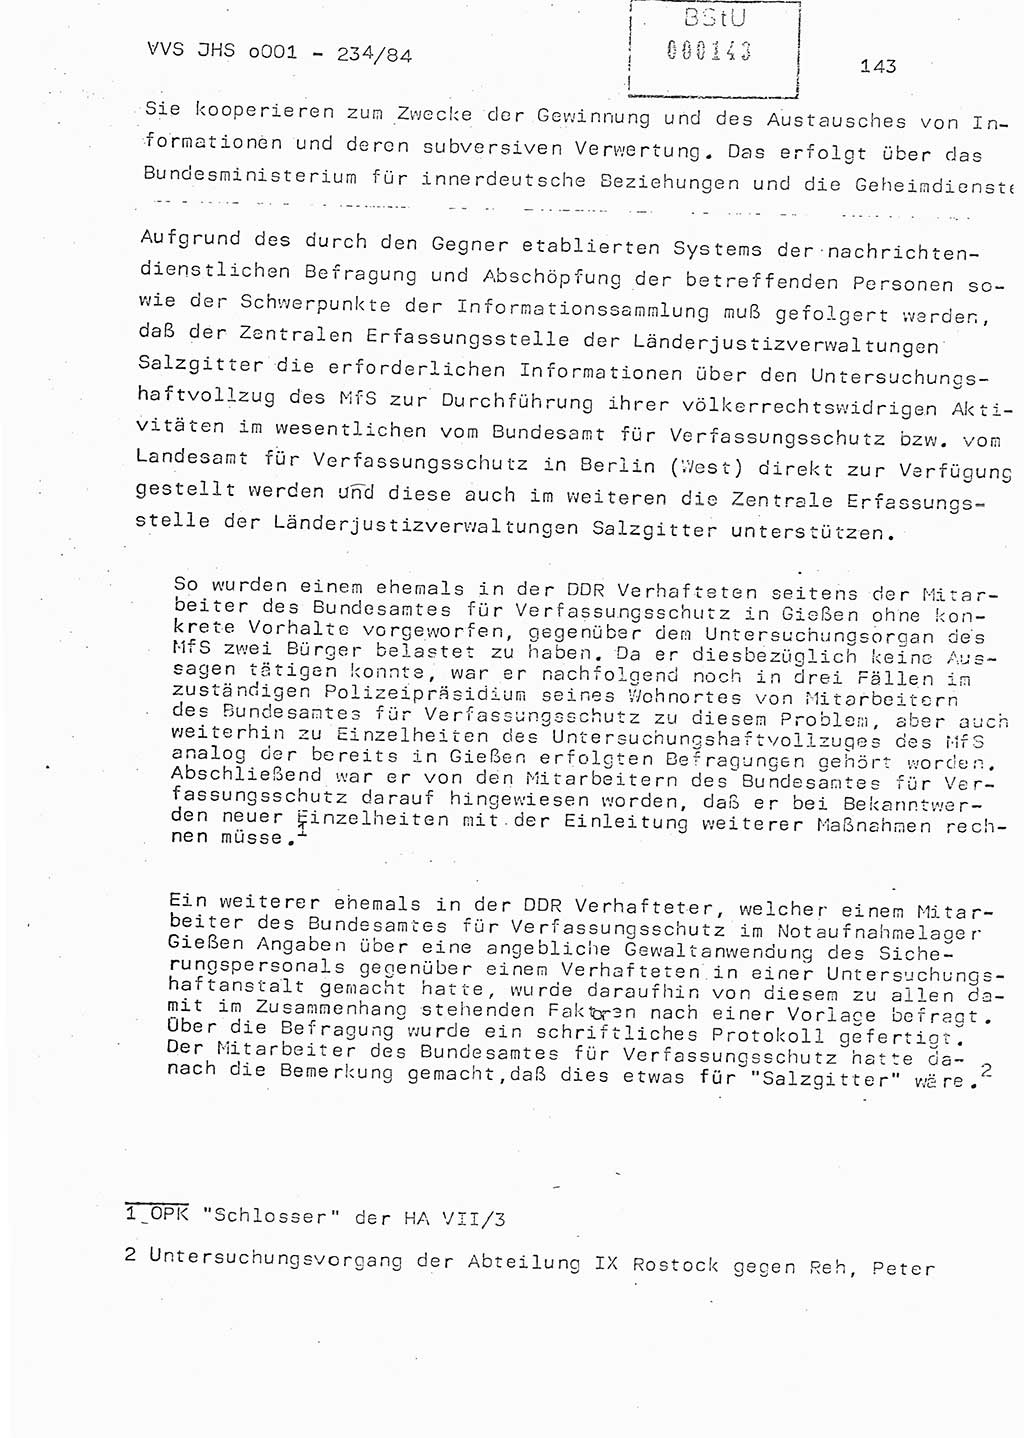 Dissertation Oberst Siegfried Rataizick (Abt. ⅩⅣ), Oberstleutnant Volkmar Heinz (Abt. ⅩⅣ), Oberstleutnant Werner Stein (HA Ⅸ), Hauptmann Heinz Conrad (JHS), Ministerium für Staatssicherheit (MfS) [Deutsche Demokratische Republik (DDR)], Juristische Hochschule (JHS), Vertrauliche Verschlußsache (VVS) o001-234/84, Potsdam 1984, Seite 143 (Diss. MfS DDR JHS VVS o001-234/84 1984, S. 143)